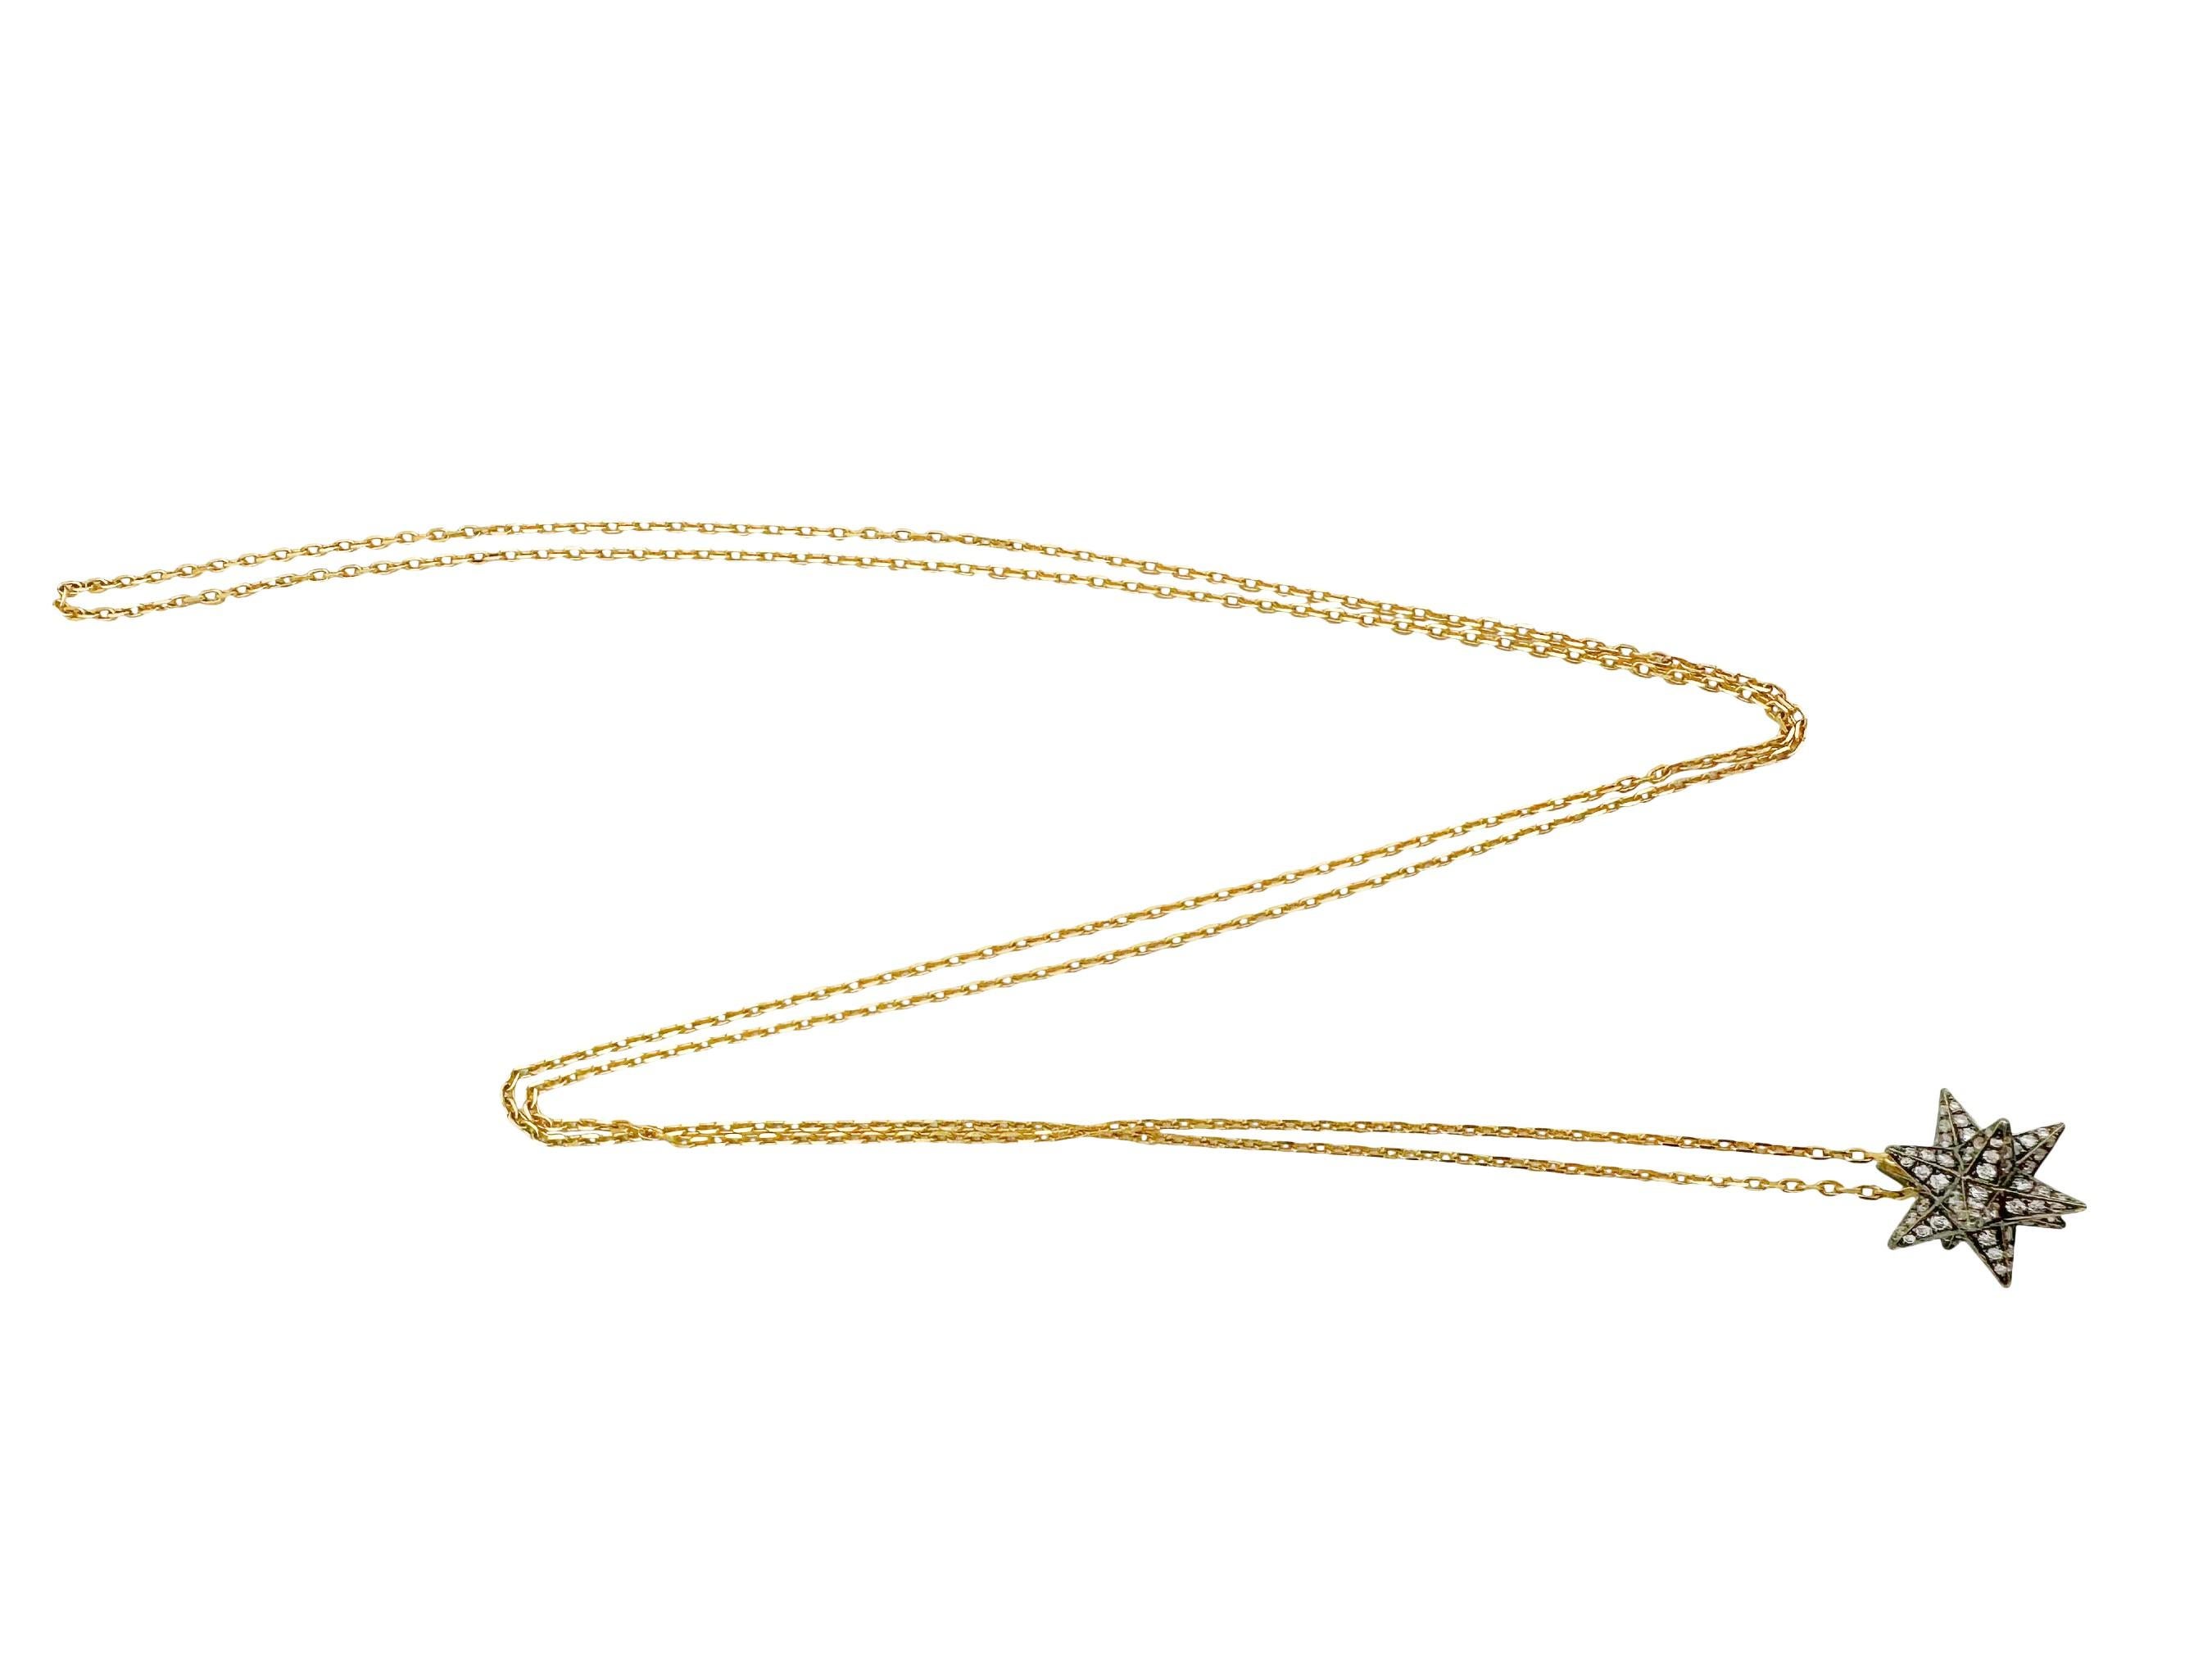 Ce collier à pendentif étoile Merkaba en or 18 carats et diamants est une belle pièce d'apparat. Fabriqué par le célèbre designer britannique Noor Fares, ce collier luxueux a une allure cosmopolite. Le collier présente un exquis pendentif étoile